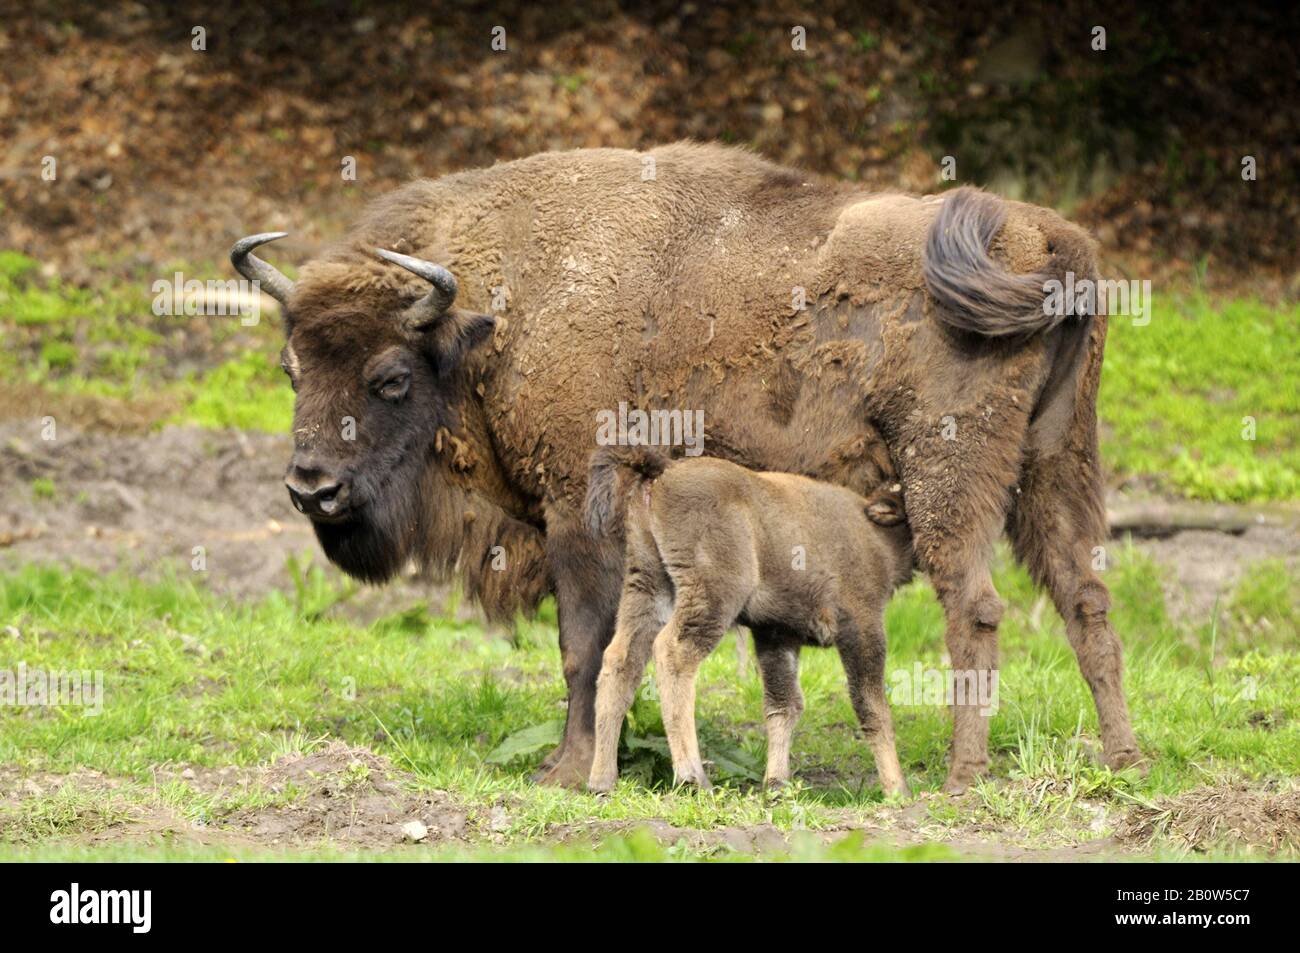 Bergwisent, (Bison bonasus caucasicus),Kuh mit Kalb, Zucht in Hardehausen, Hessen Deutschland Stock Photo